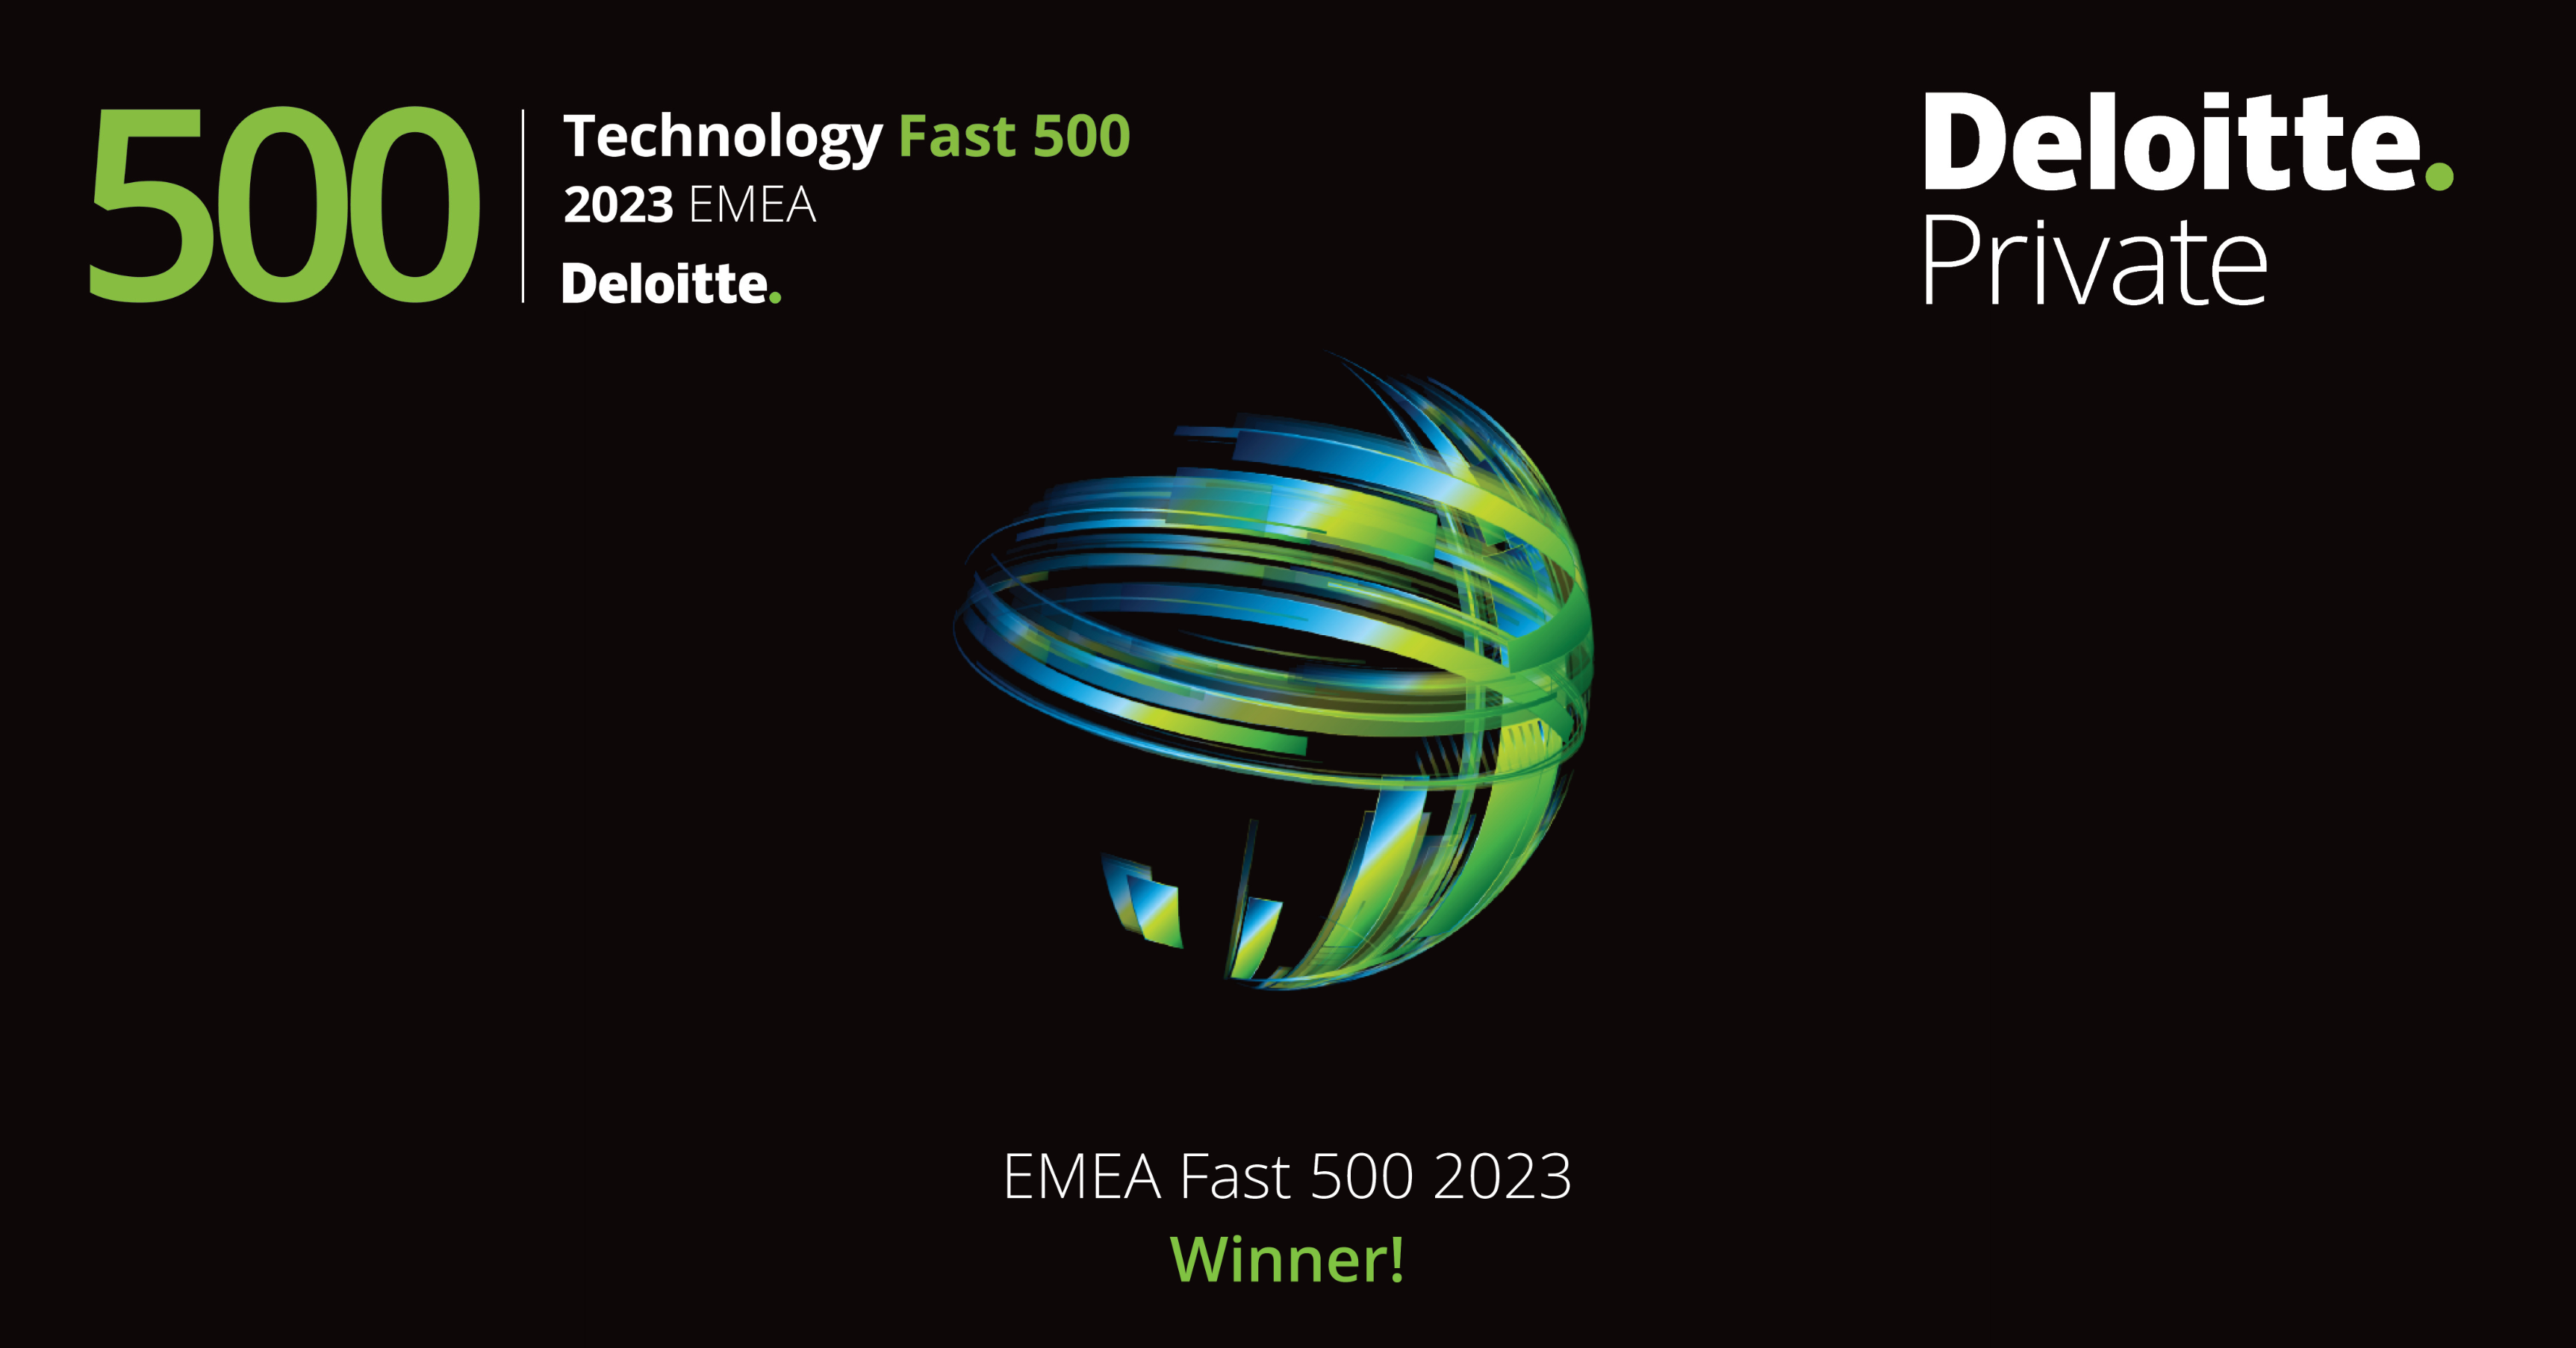 Carbon Clean enters the Deloitte EMEA Fast 500